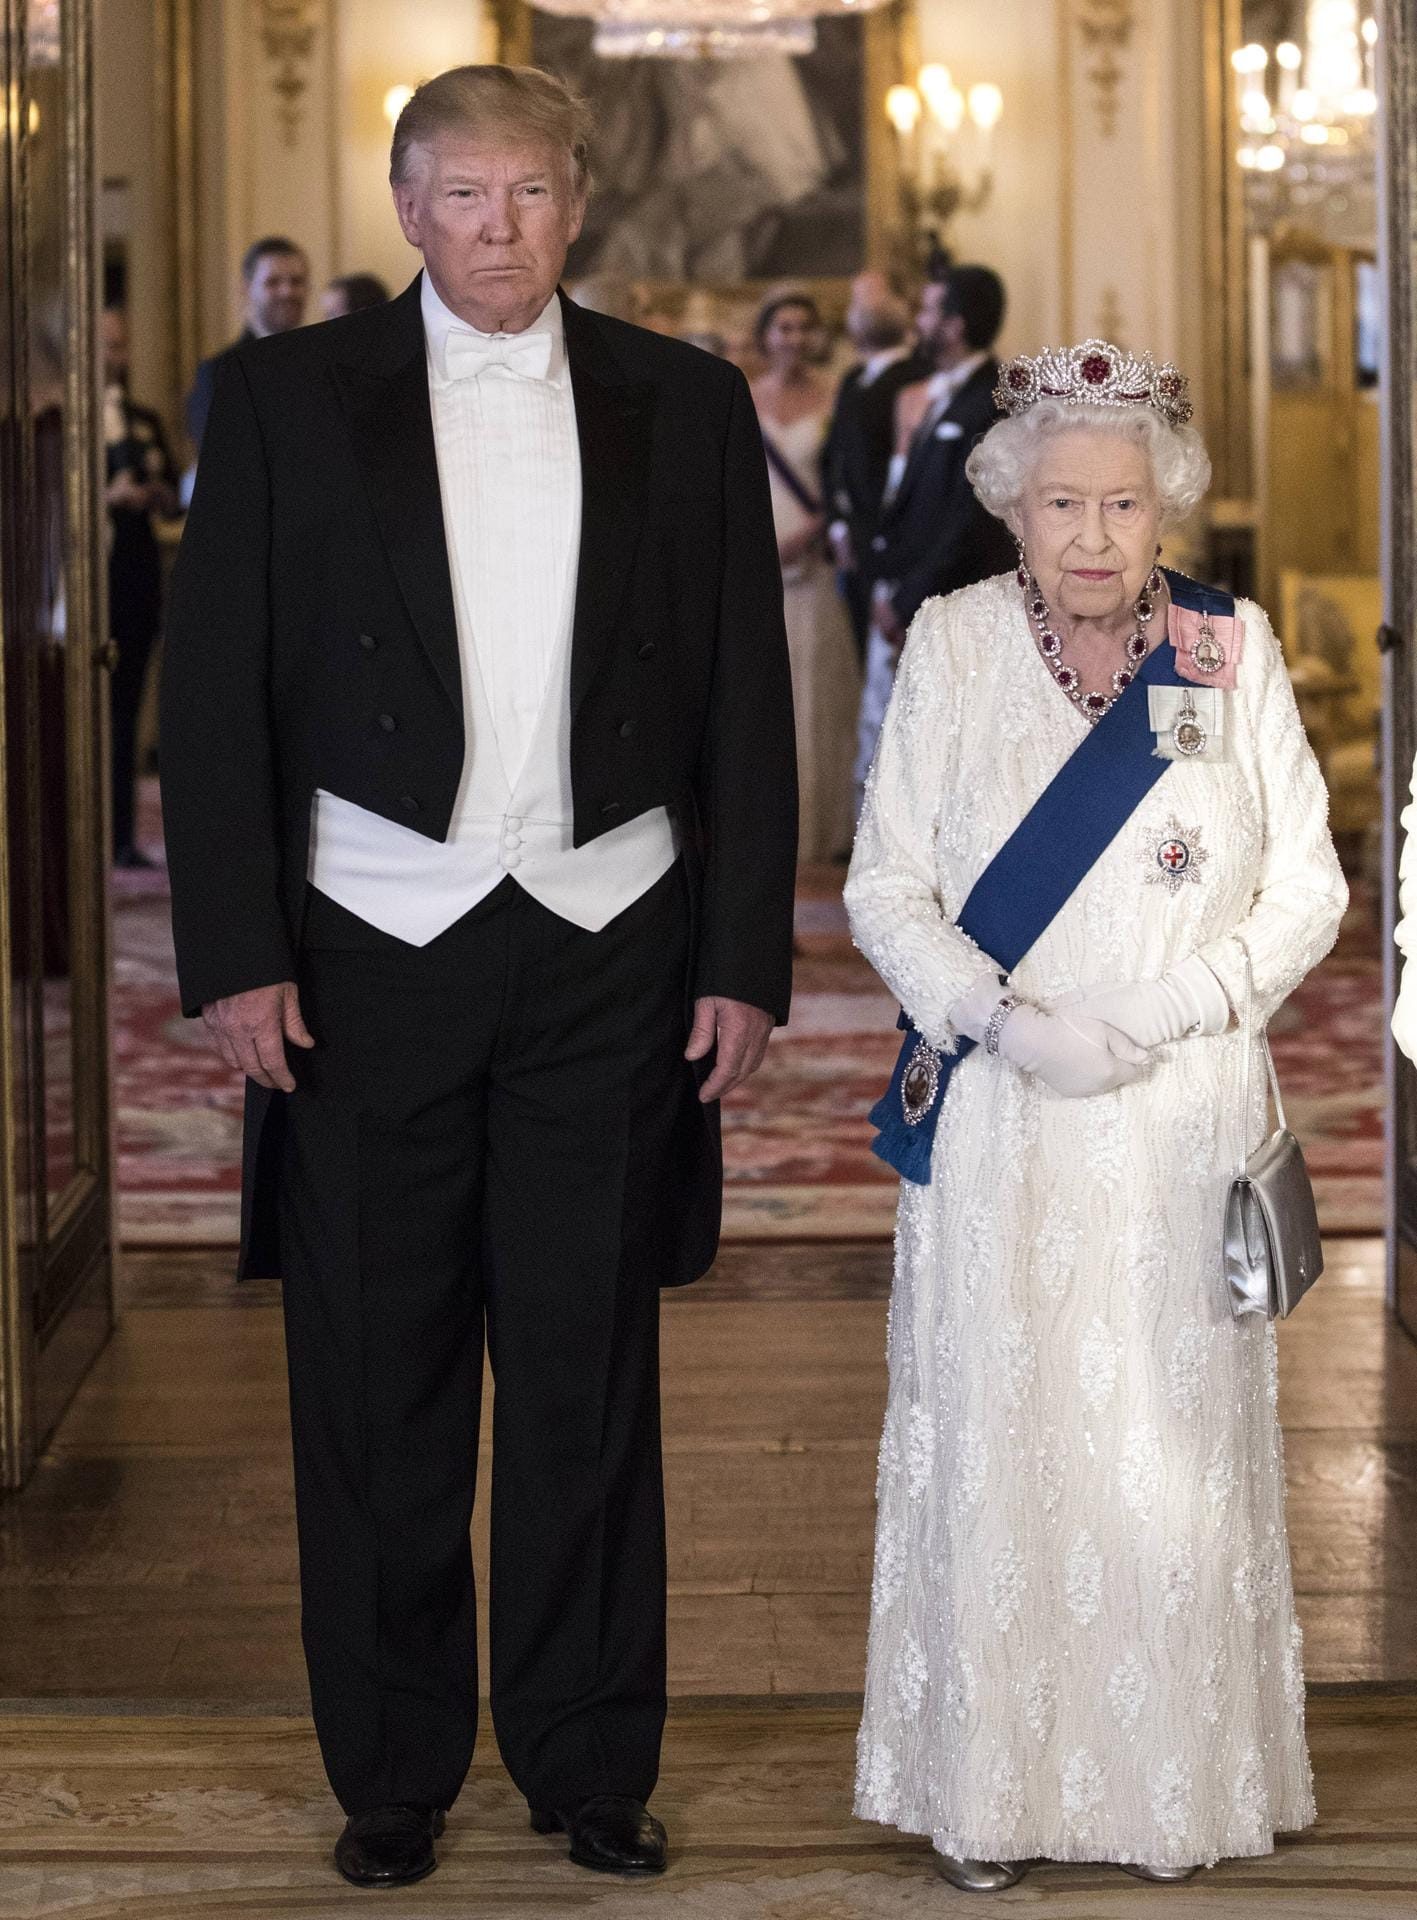 Am Abend folgte dann ein feierliches Staatsbankett im Buckingham Palast. Trump erschien dabei im Frack mit Fliege.